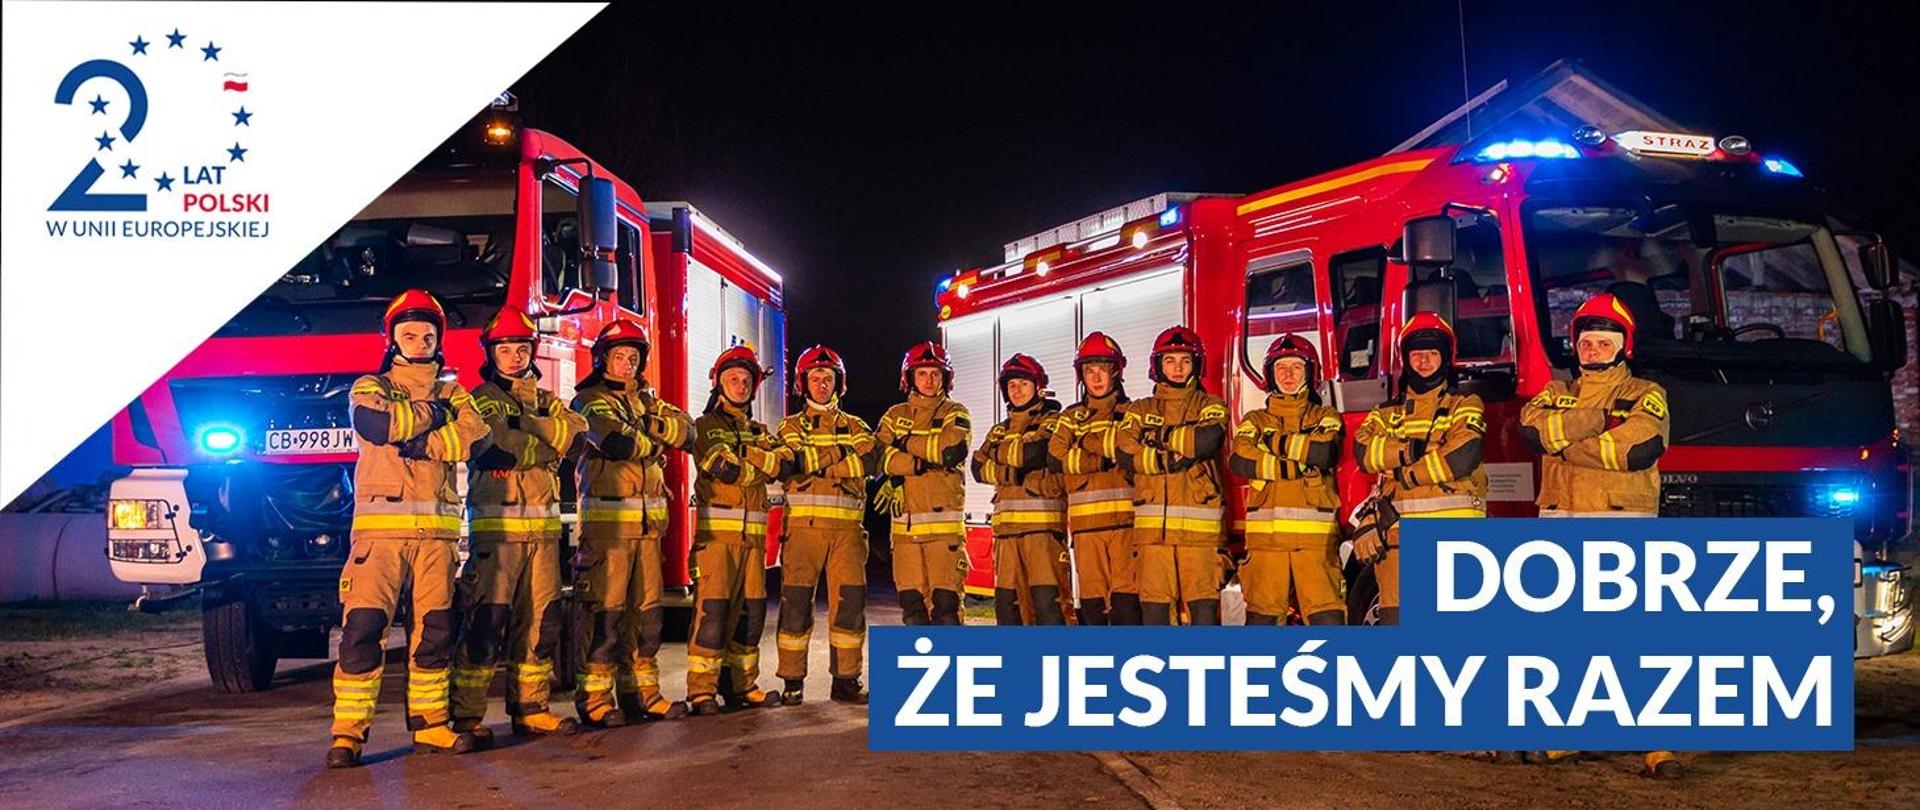 Zdjęcie grupy strażaków stojących pomiędzy dwoma samochodami ratowniczo-gaśniczymi, w prawym dolnym rogu napis Dobrze, że jesteśmy razem. W lewym górnym rogu logotyp 20 lat Polski w Unii Europejskiej